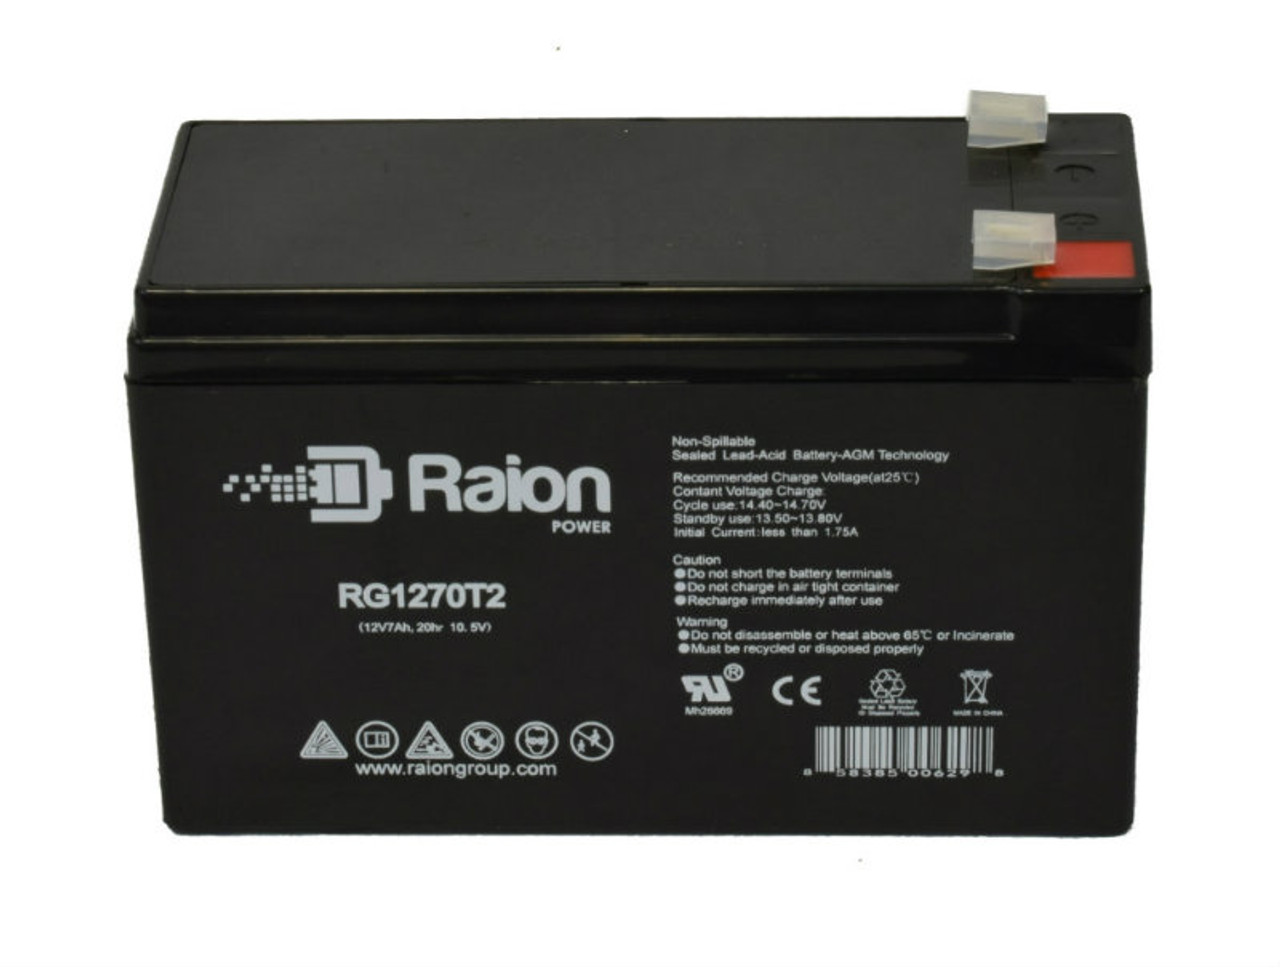 Raion Power RG1270T1 12V 7Ah Lead Acid Battery for DSC Alarm Systems PC1500